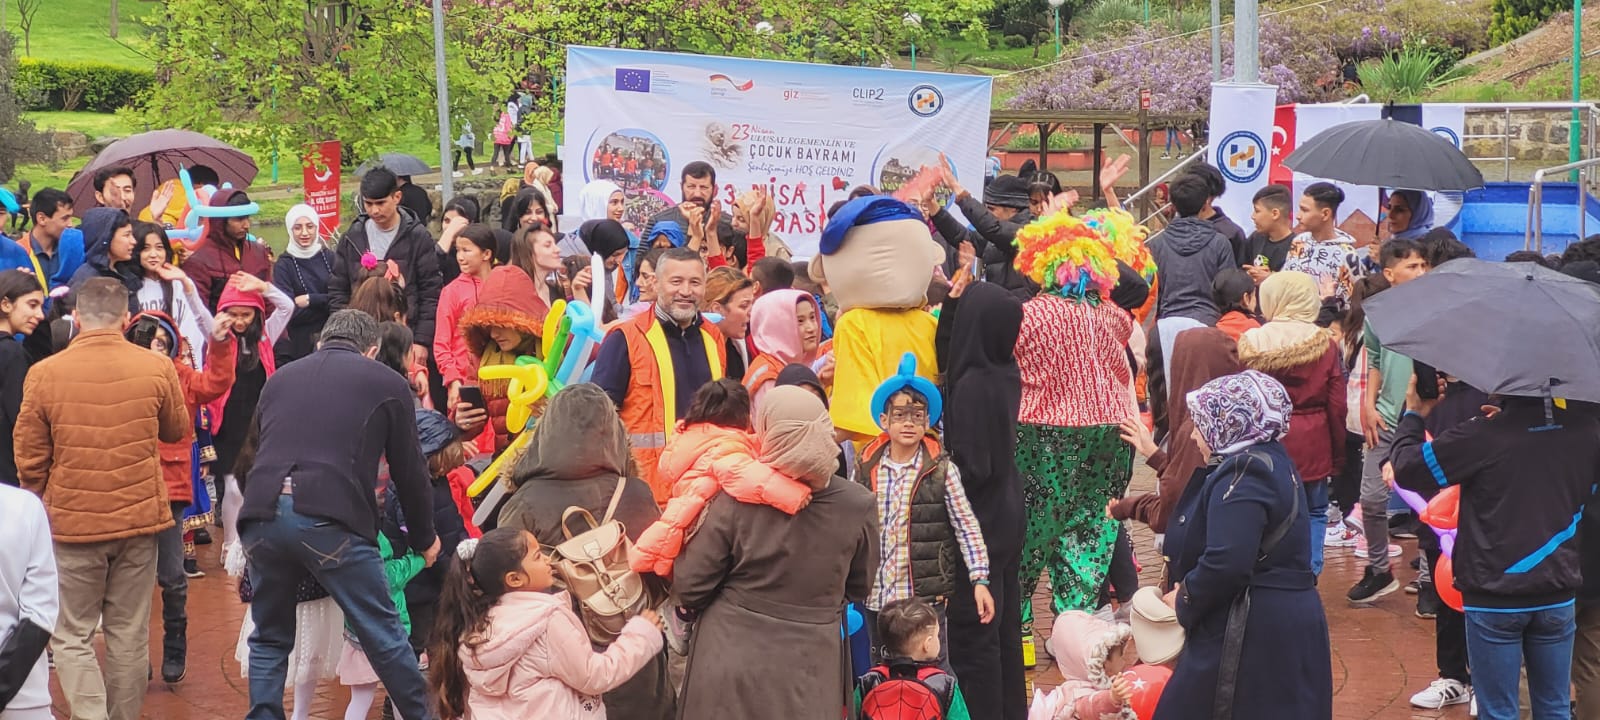 Trabzon’da yaşayan sığınmacı ve depremzede çocuklar için 23 Nisan etkinliği düzenlendi